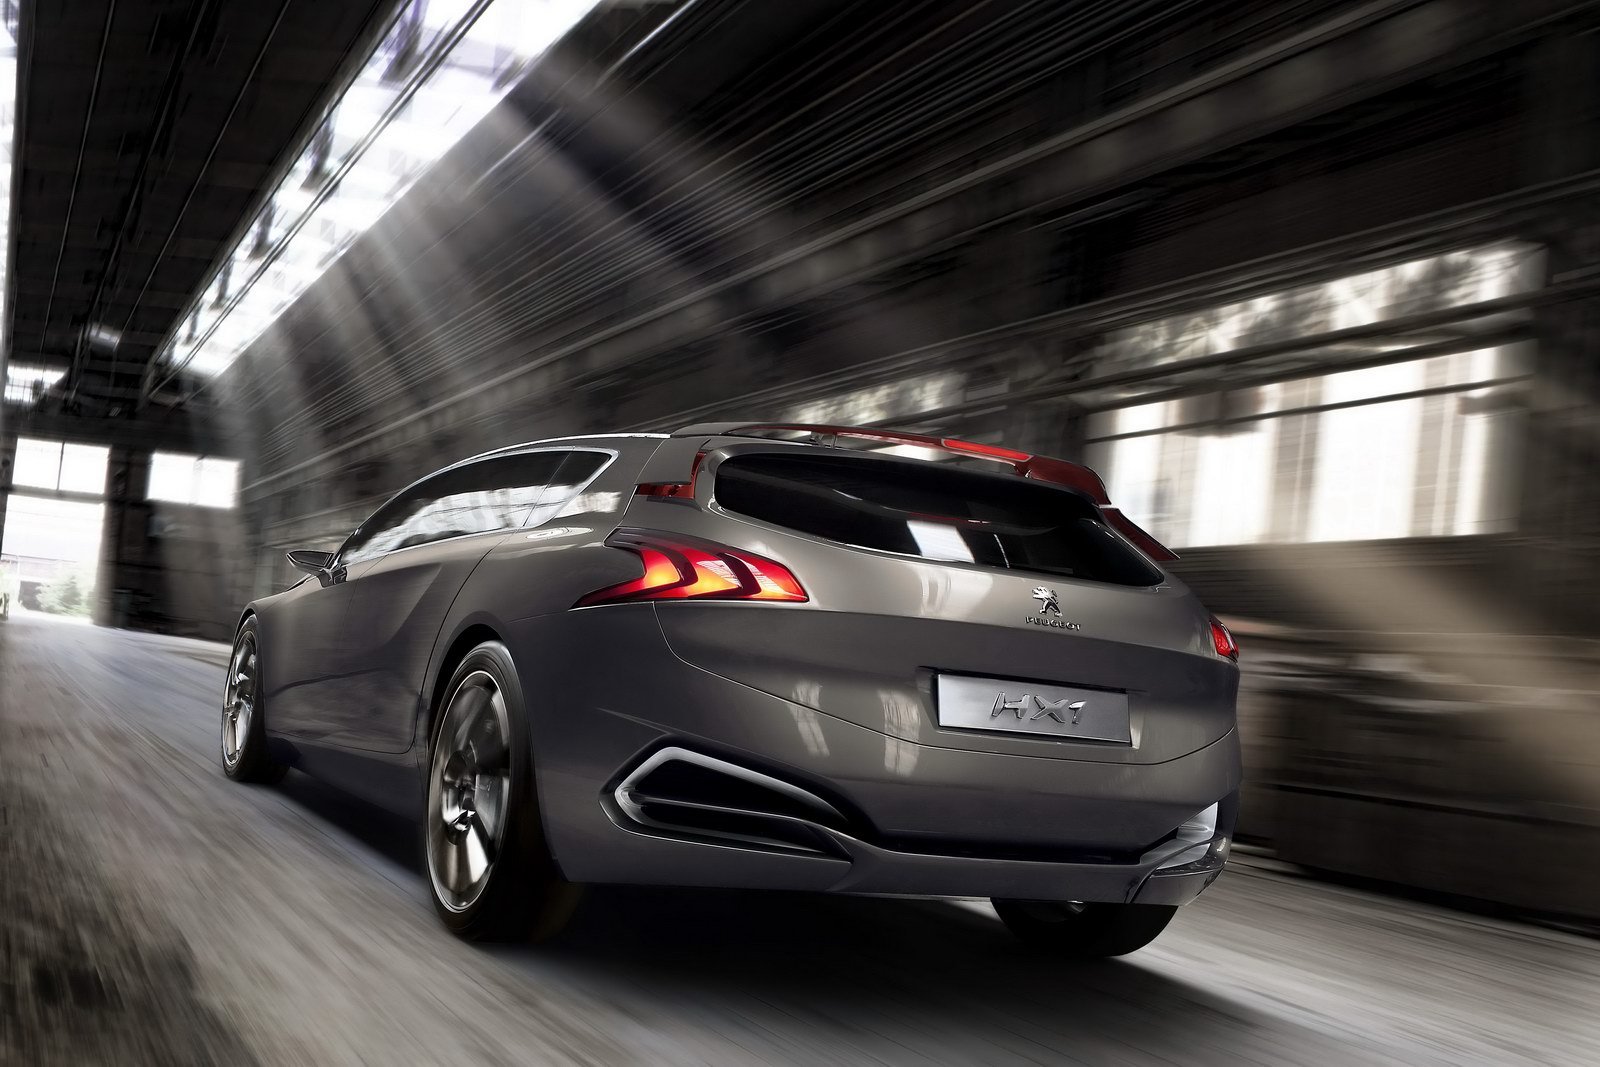 Jantele lui Peugeot HX1 sunt concepute aerodinamic: peste 100 km/h, suprafata lor devine plana